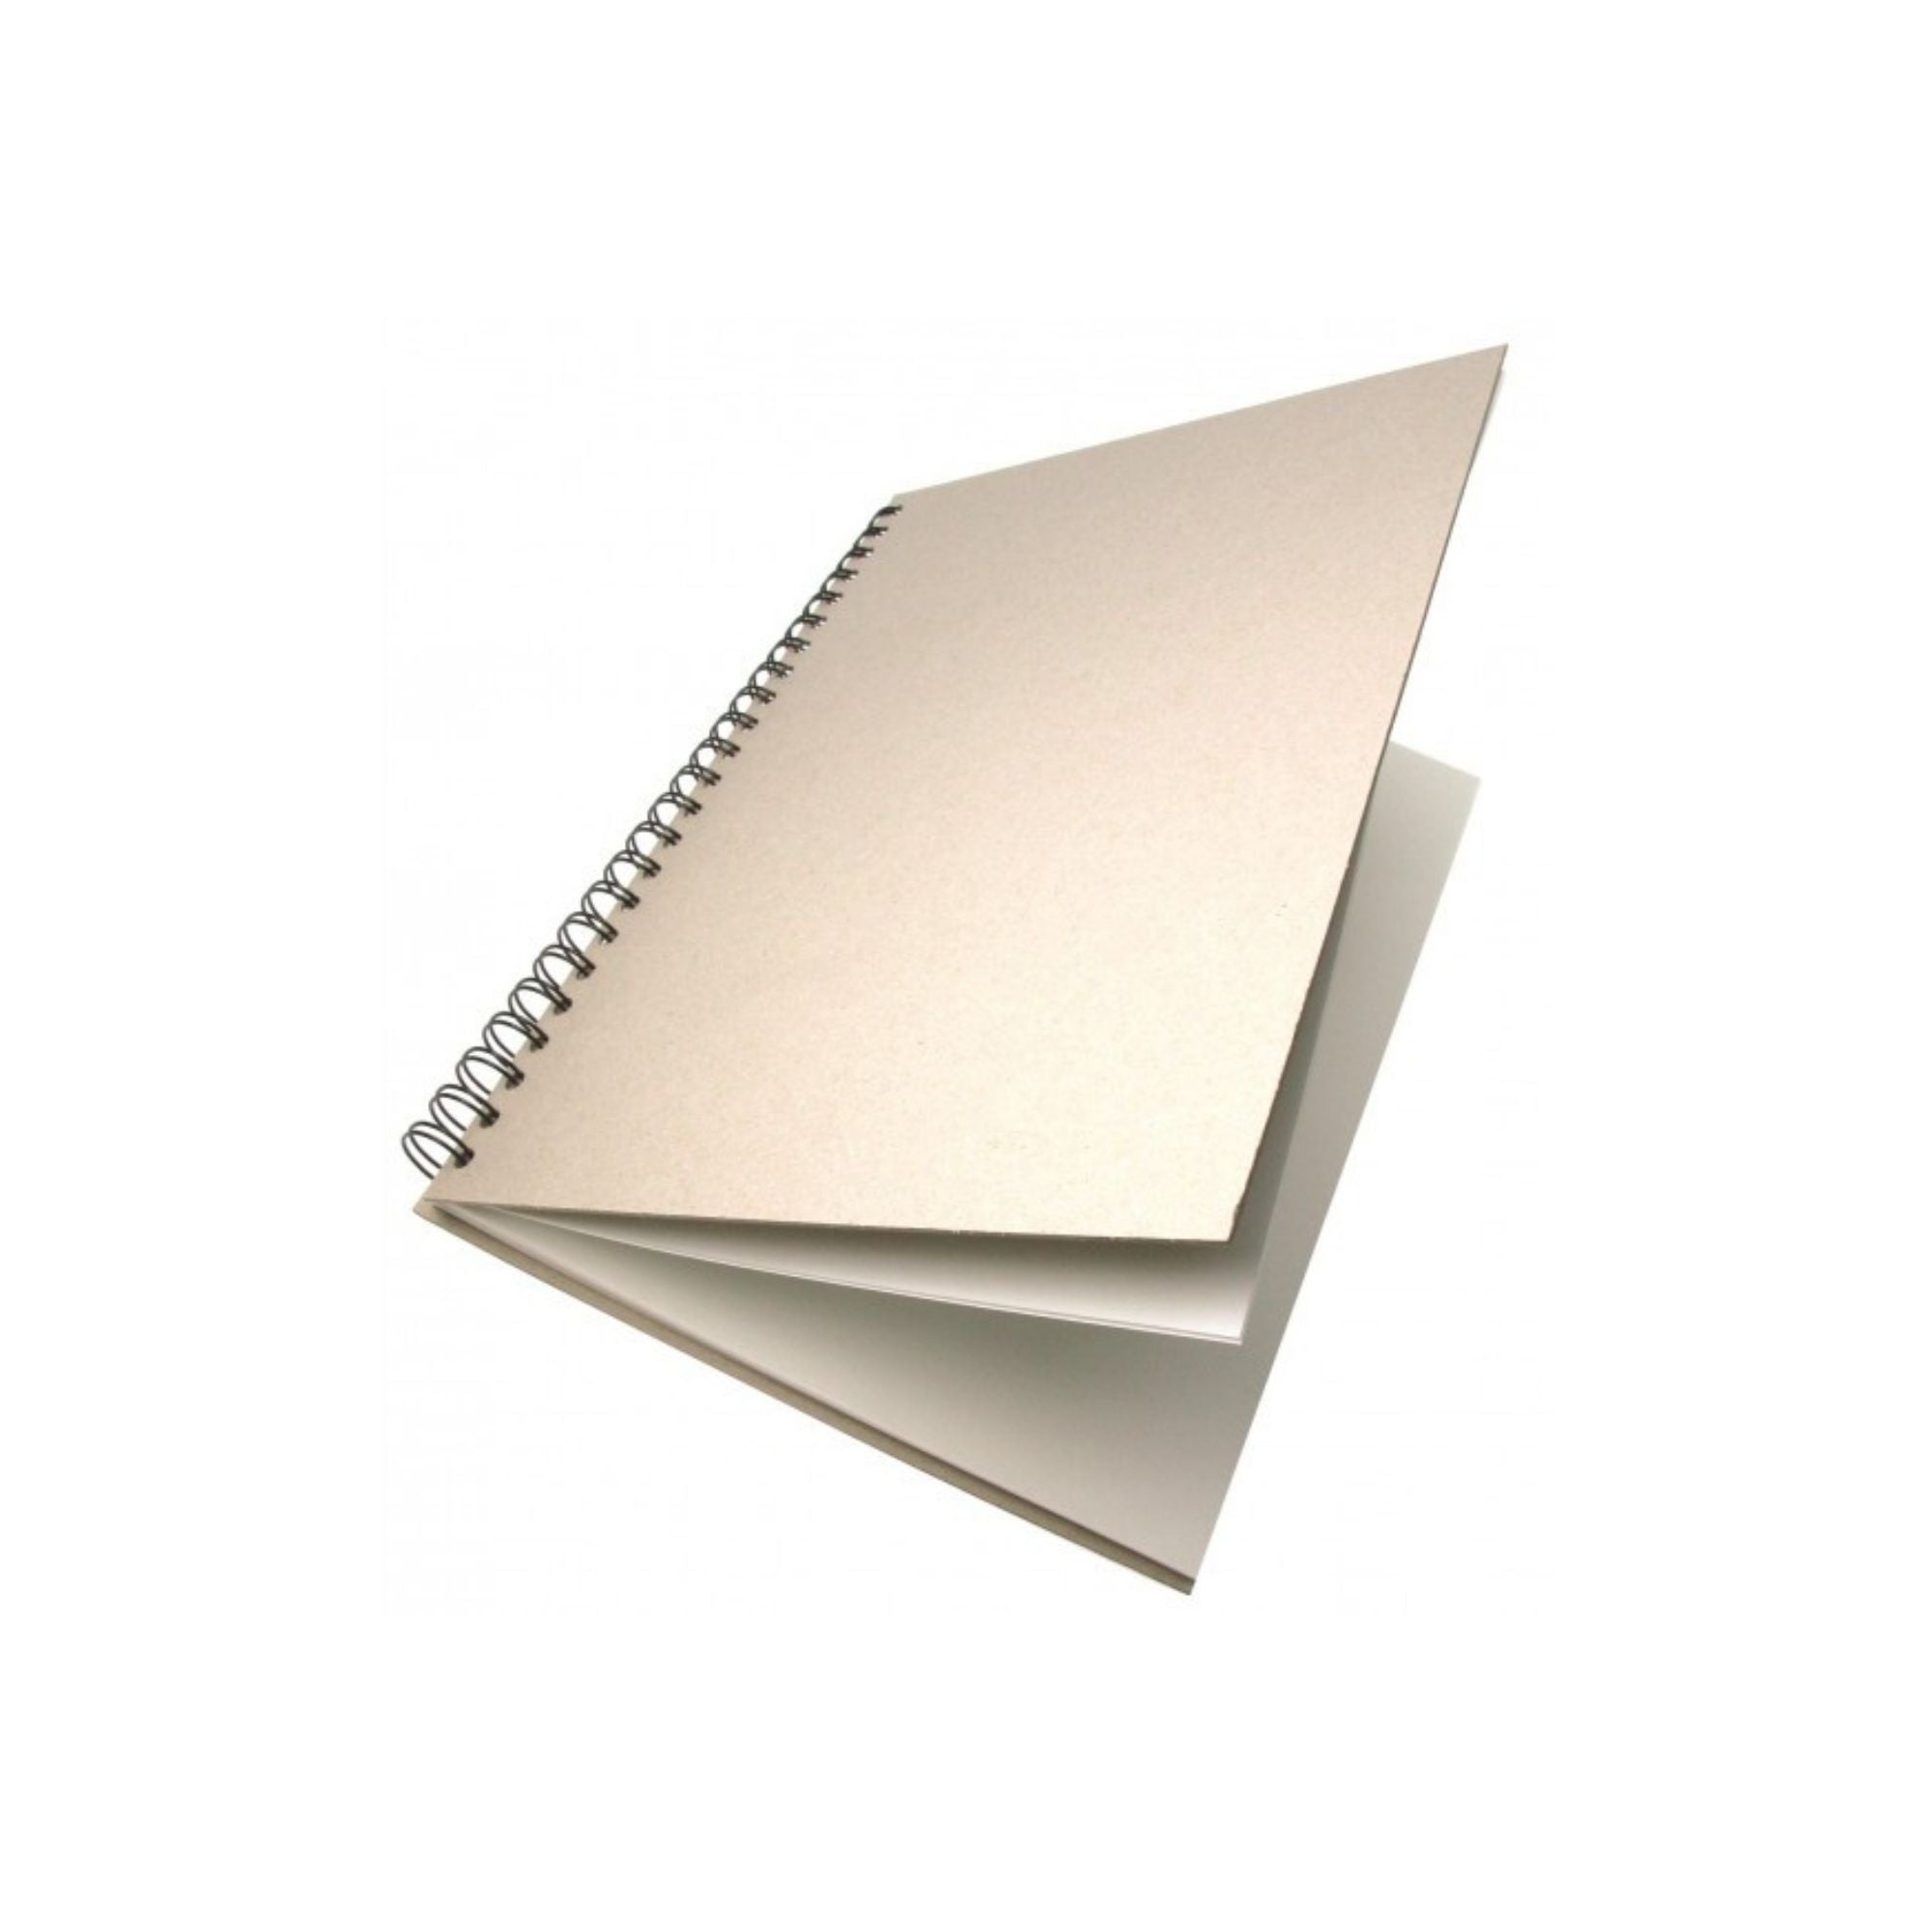 Frisk Greyboard Spiral Cartridge Book 110gsm - 50 Sheets